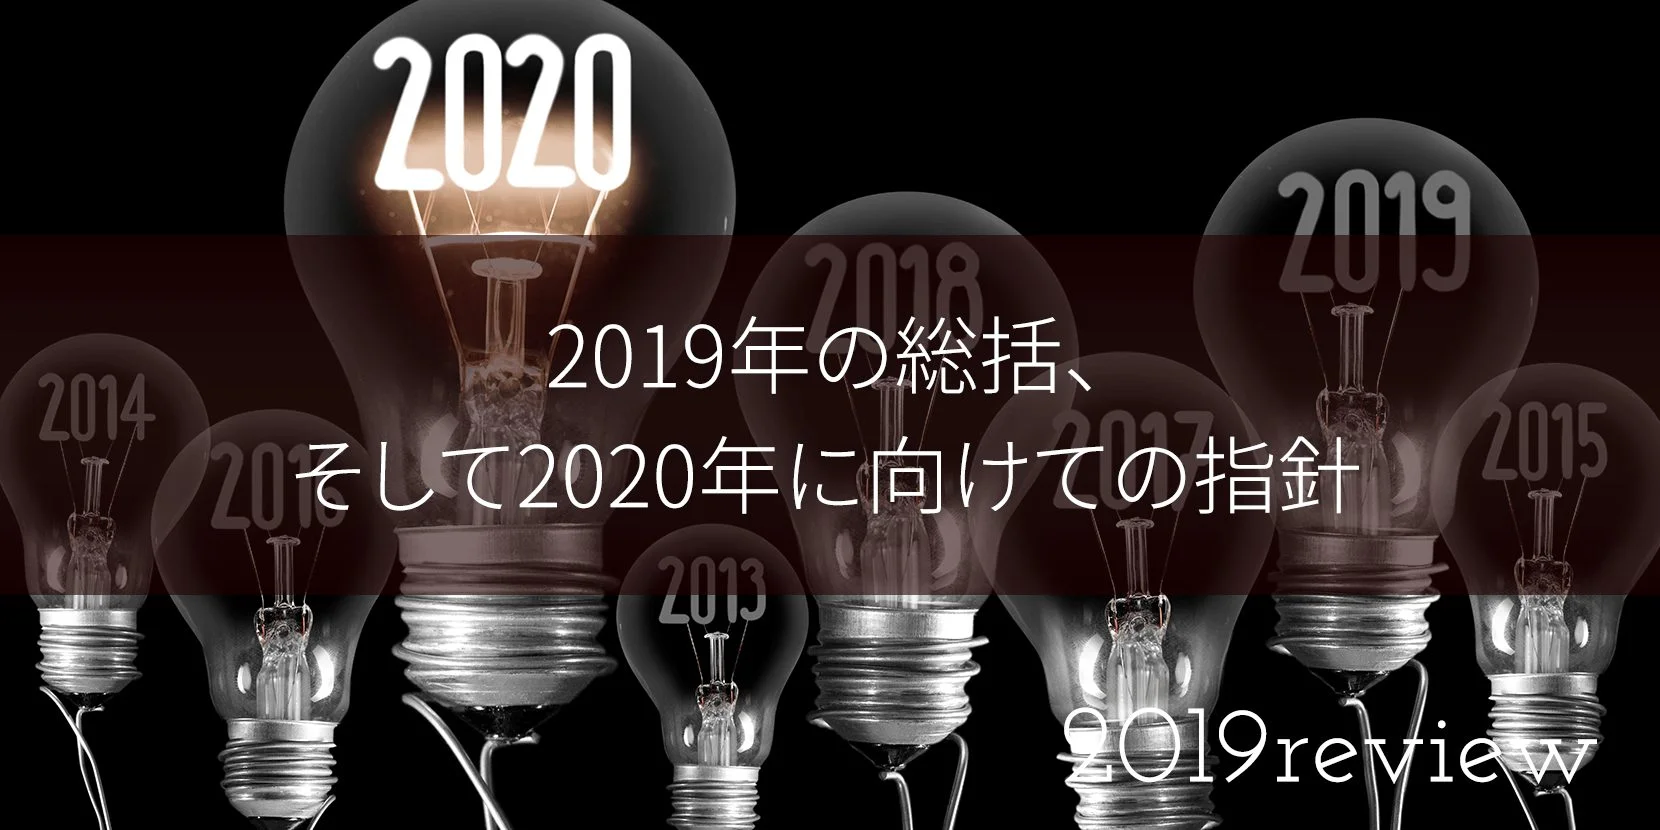 2019年の総括、そして2020年に向けての指針